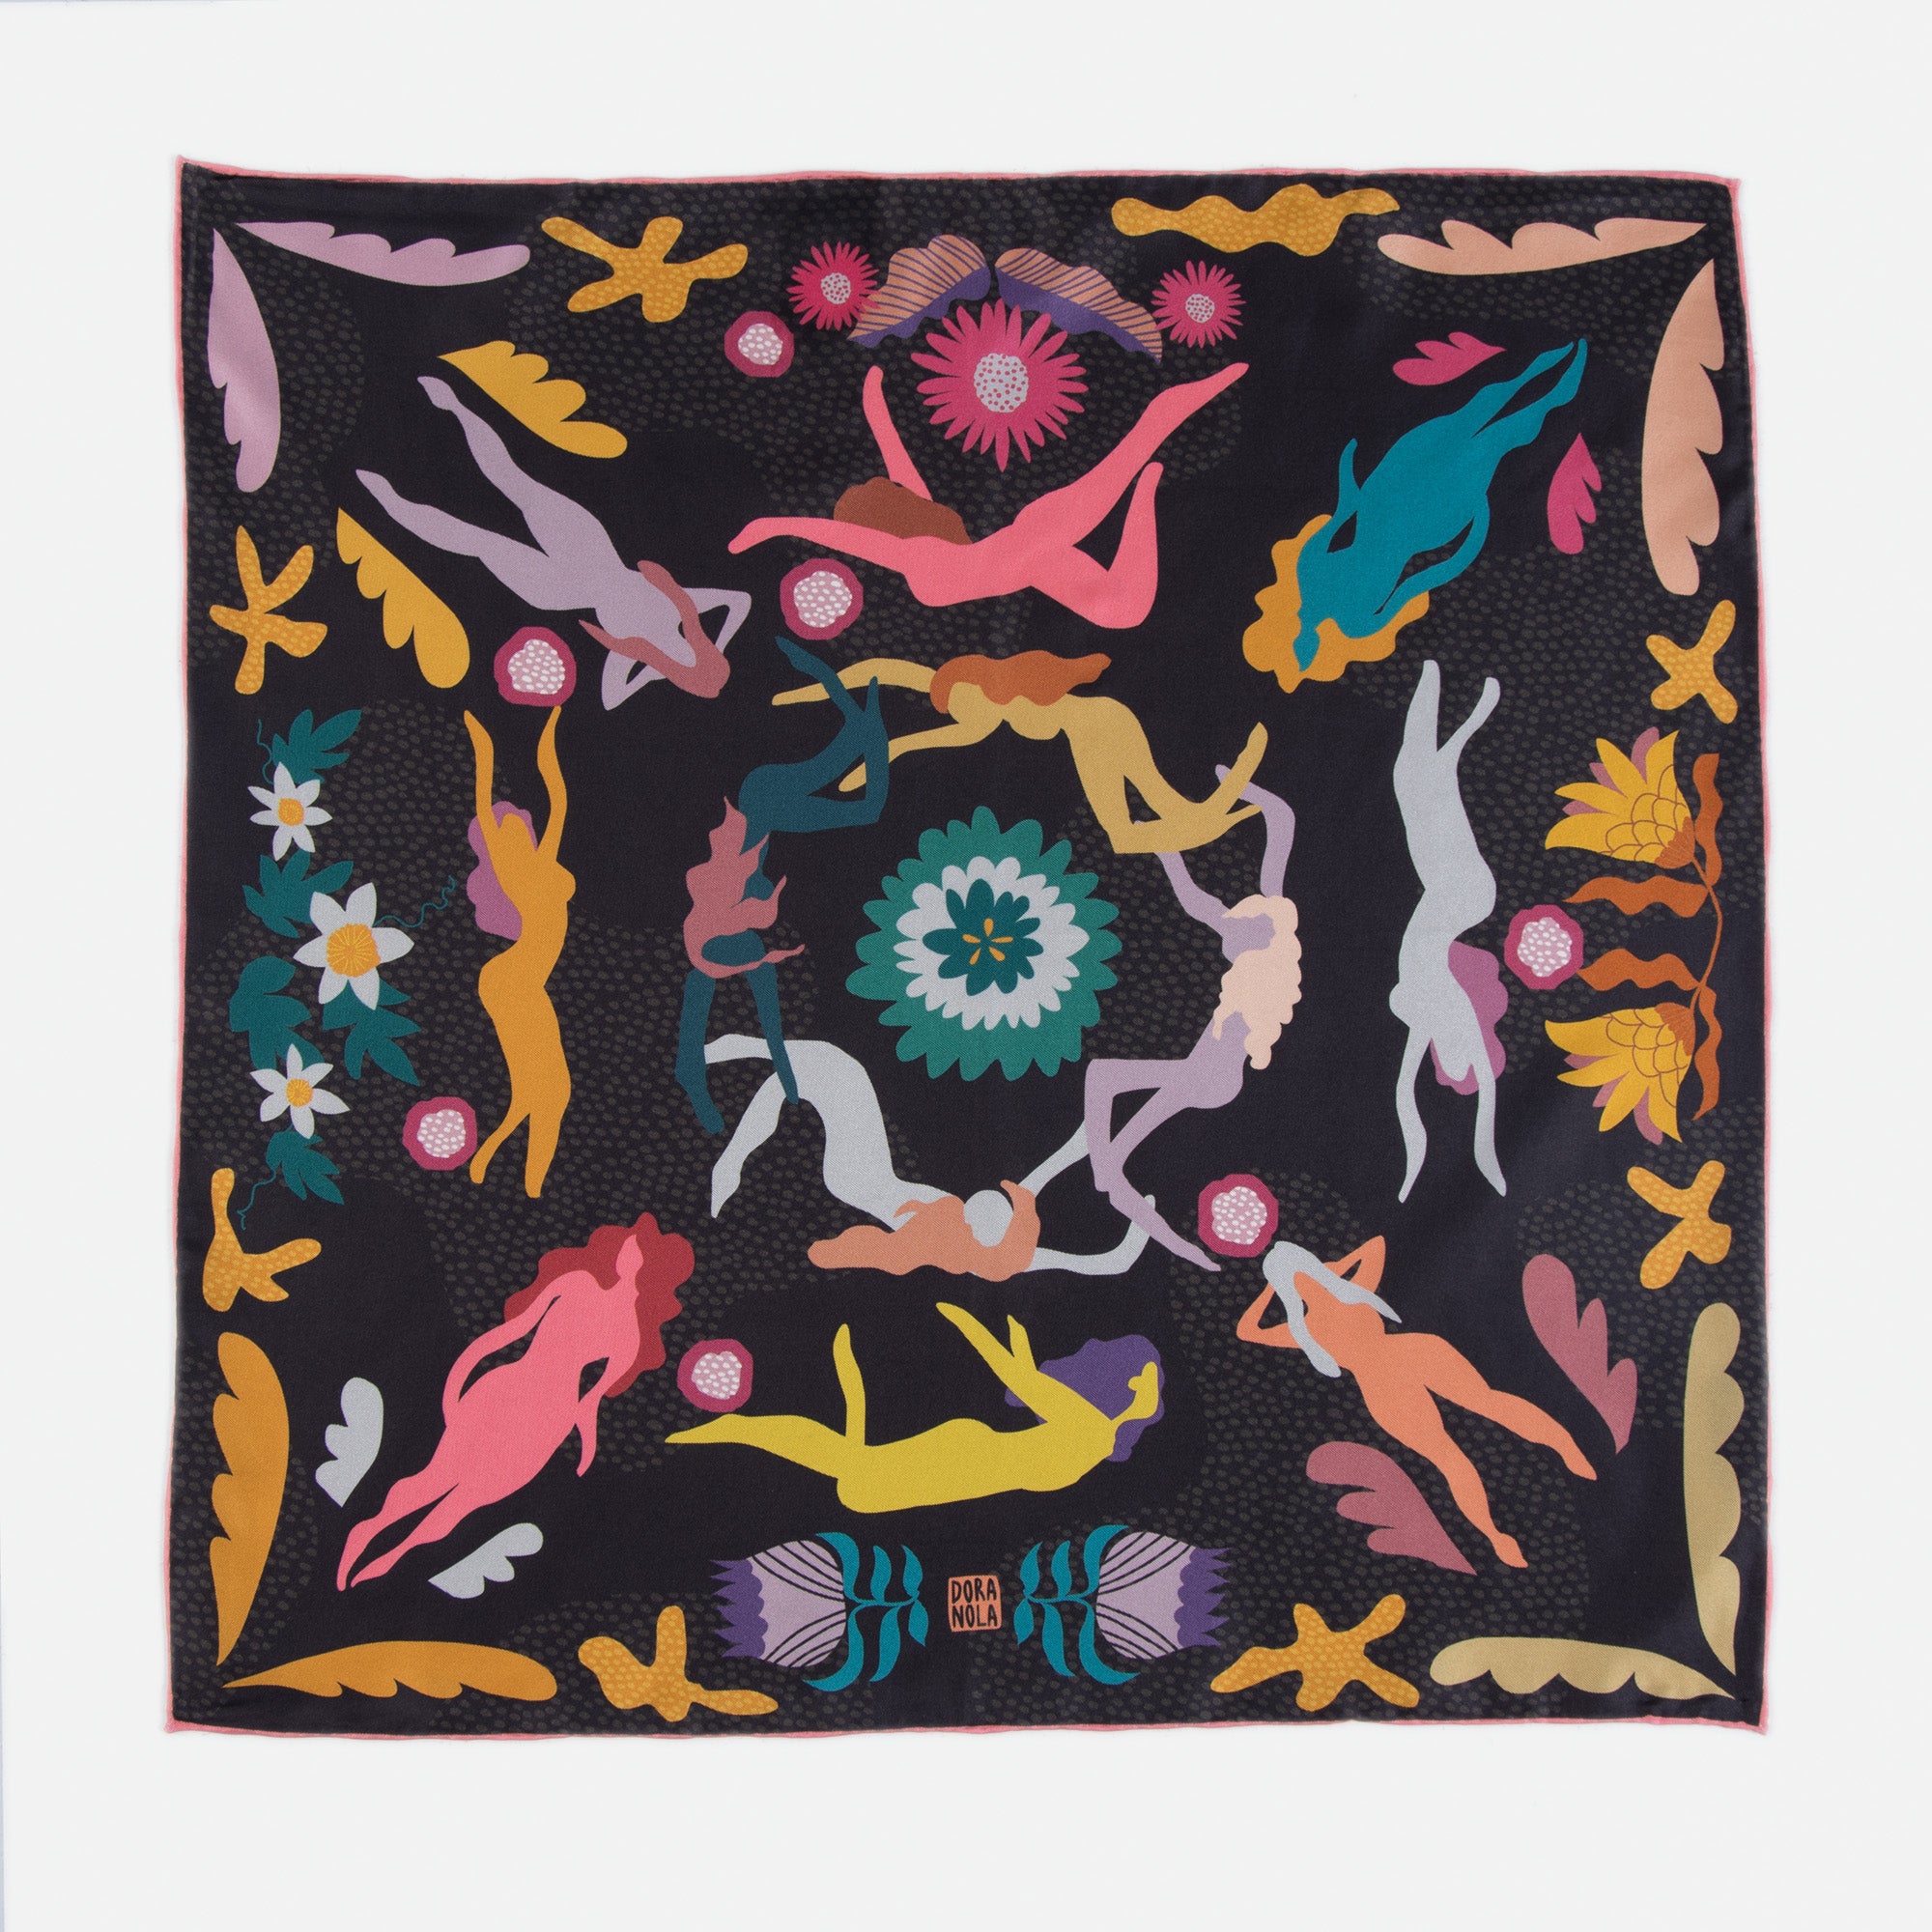 Neckerchief silk scarf - Chasing stories - 20" x 20"